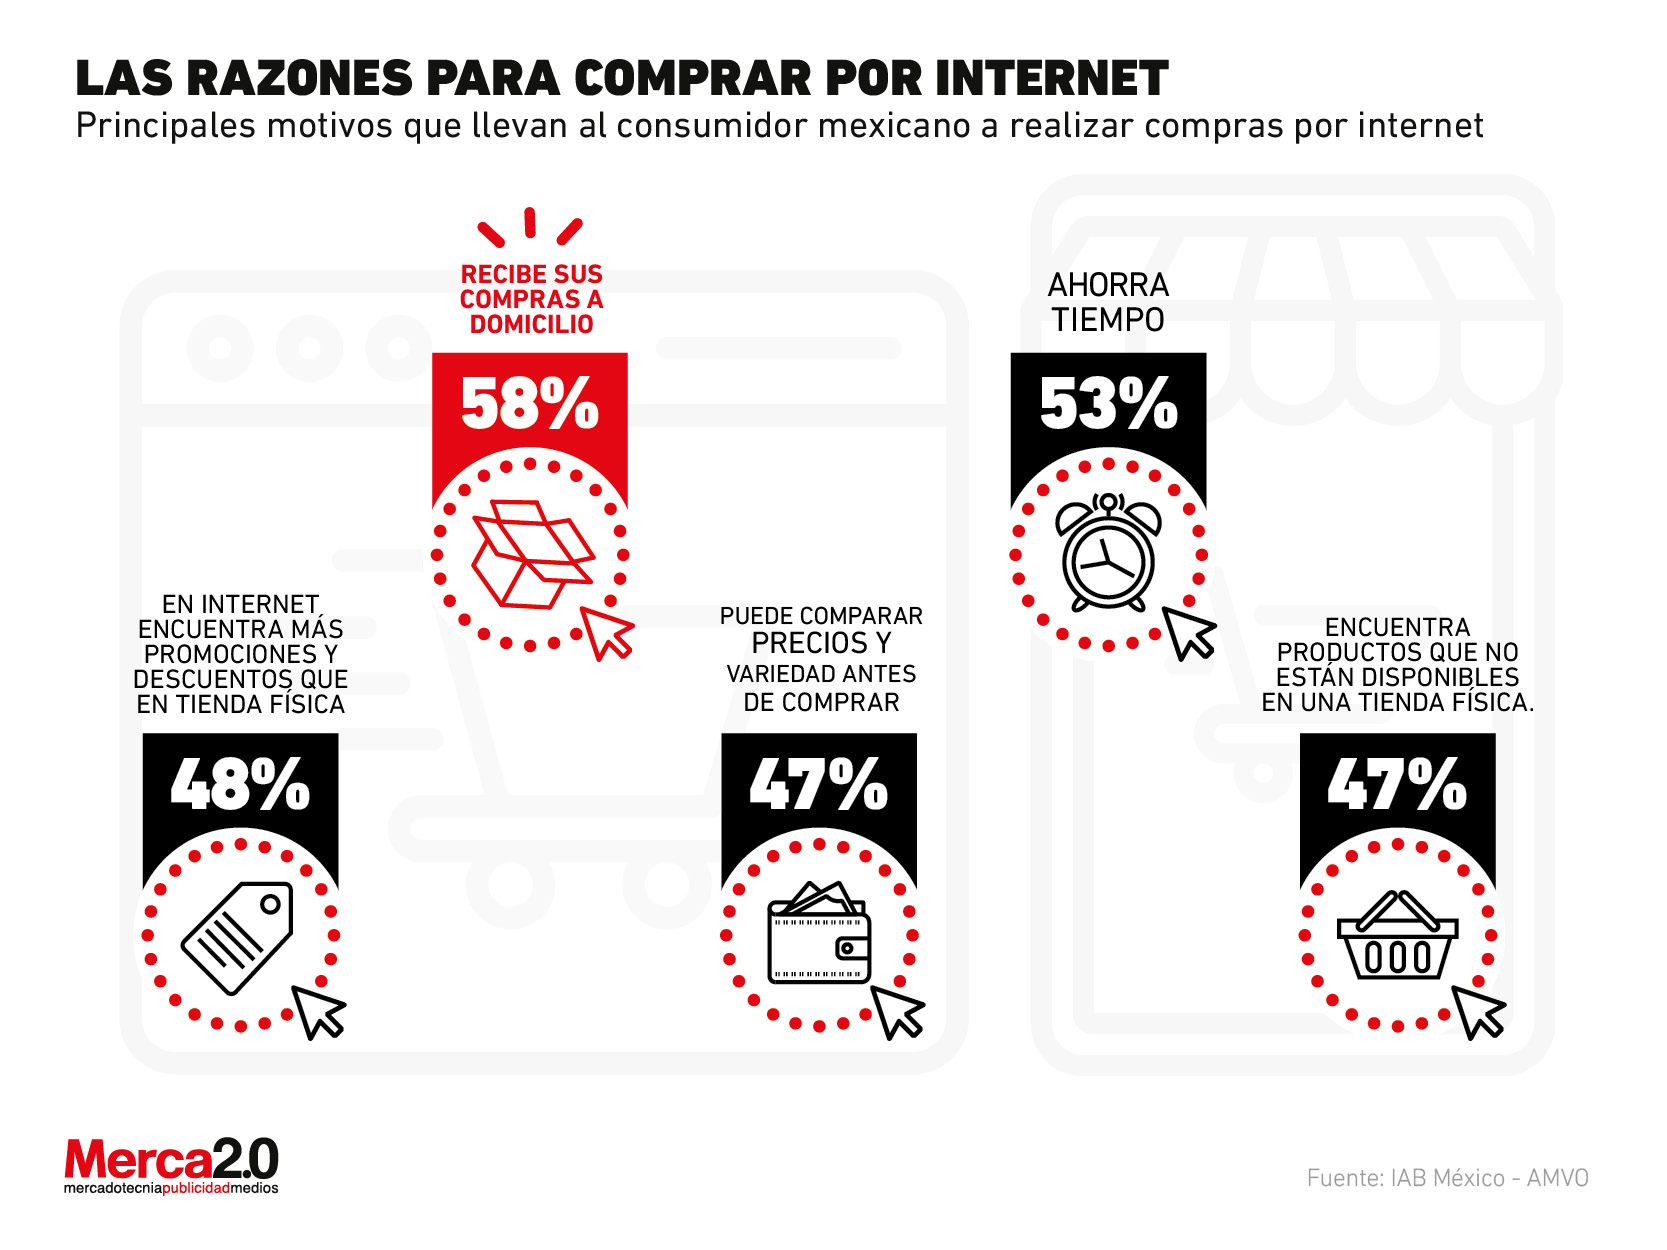 Estos son los principales motivos por los que los mexicanos hacen compras por internet